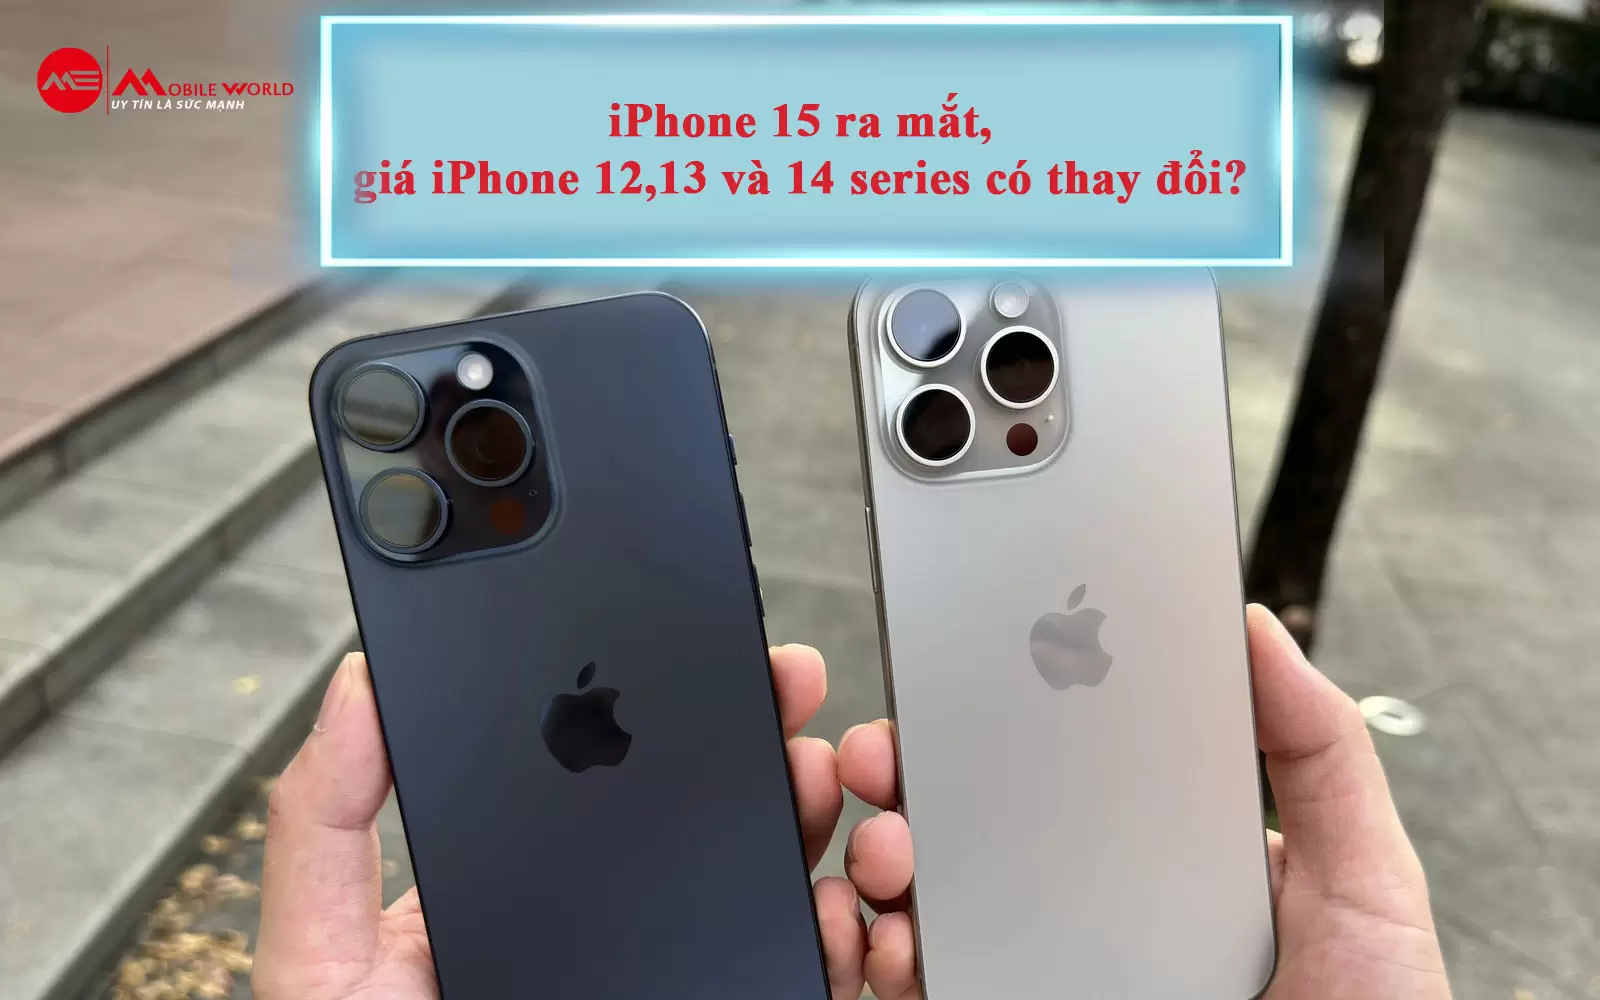 iPhone 15 ra mắt, giá iPhone 12,13 và 14 series có thay đổi?